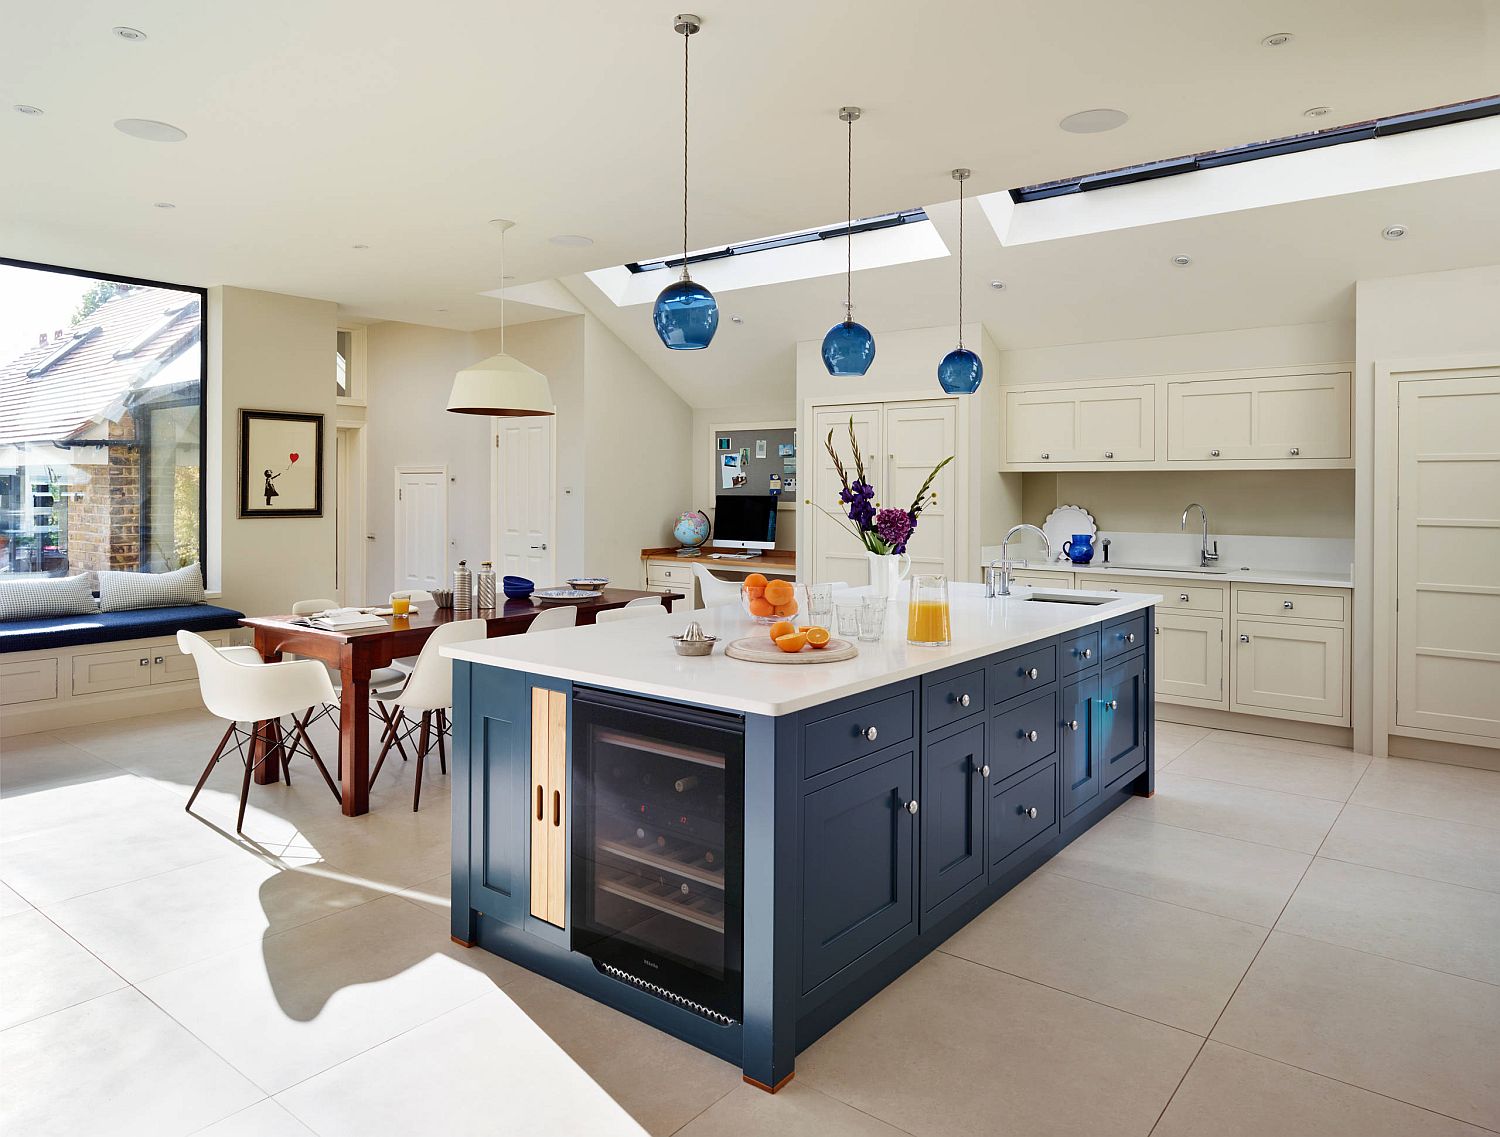 Beige kitchen design with blue